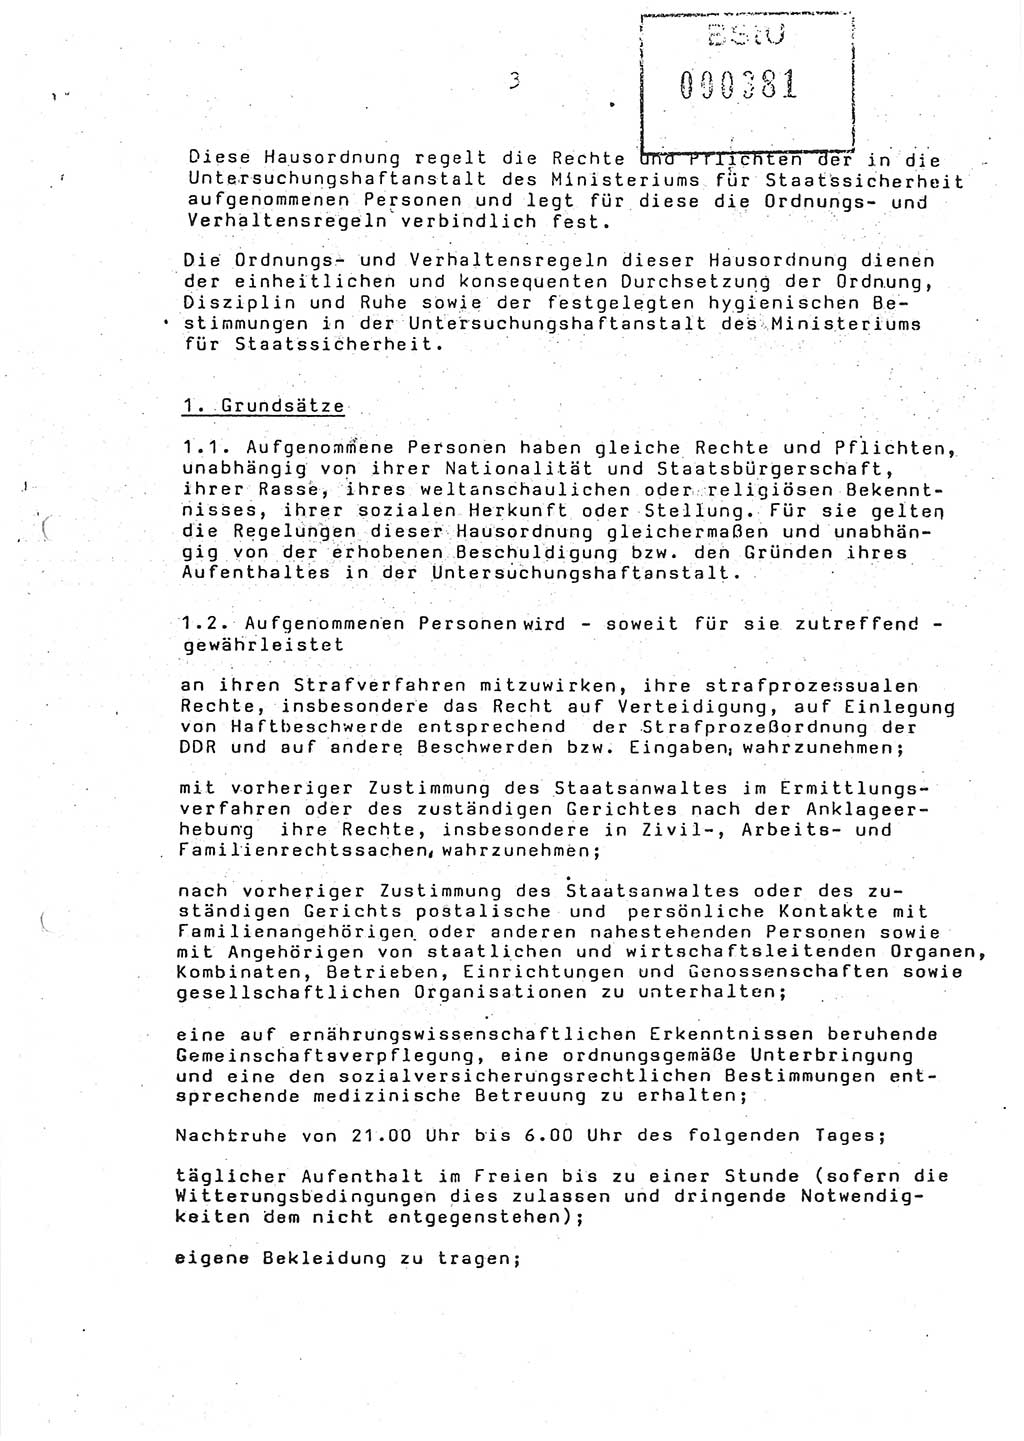 Ordnungs- und Verhaltensregeln (Hausordnung) für in die Untersuchungshaftanstalt (UHA) aufgenommene Personen, Ministerium für Staatssicherheit (MfS) [Deutsche Demokratische Republik (DDR)], Abteilung ⅩⅣ, Leiter, Büro der Leitung (BdL) 35/86, Berlin, 29.1.1986, Blatt 3 (H.-Ordn. UHA MfS DDR Abt. ⅩⅣ Ltr. BdL/35/86 1986, Bl. 3)